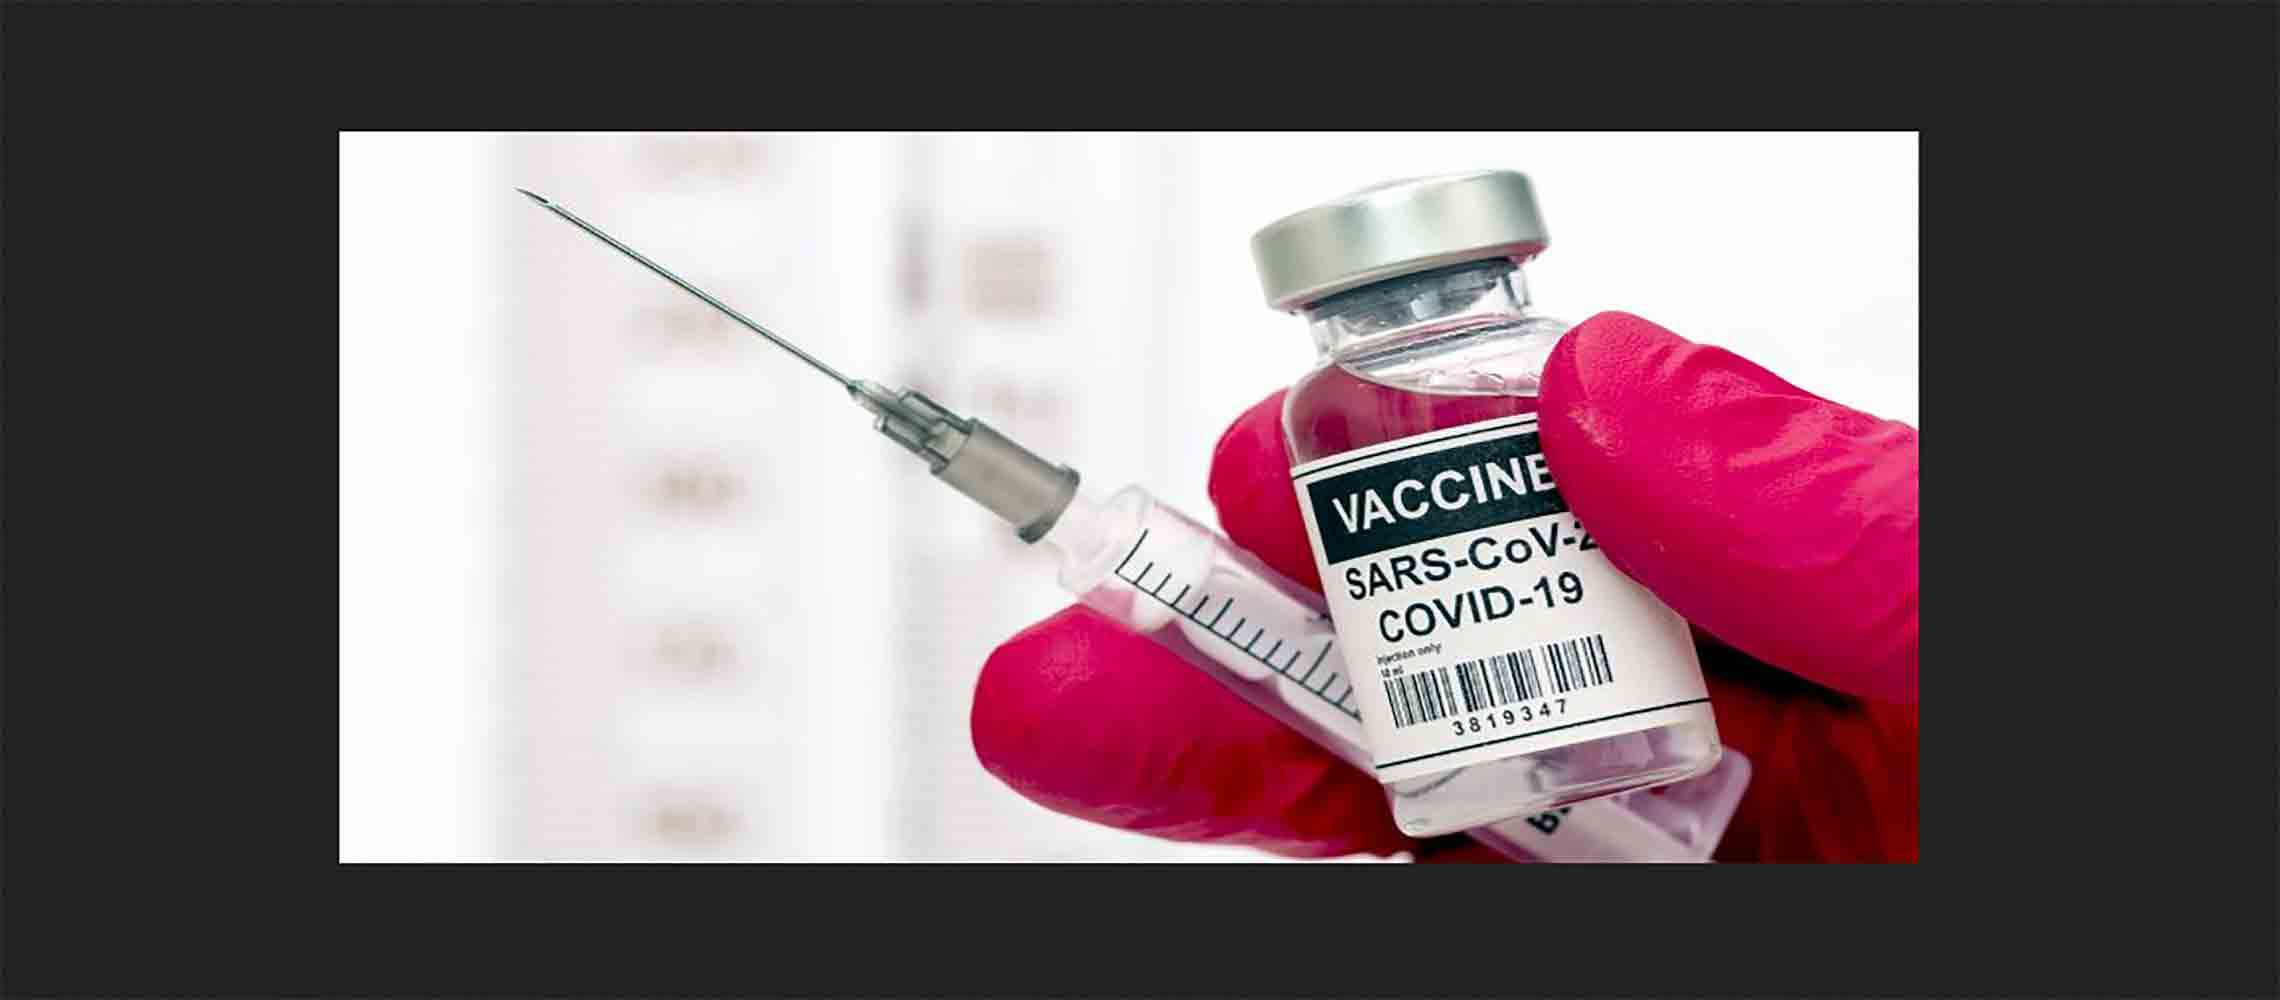 Coronavirus_vaccine_vaccinations